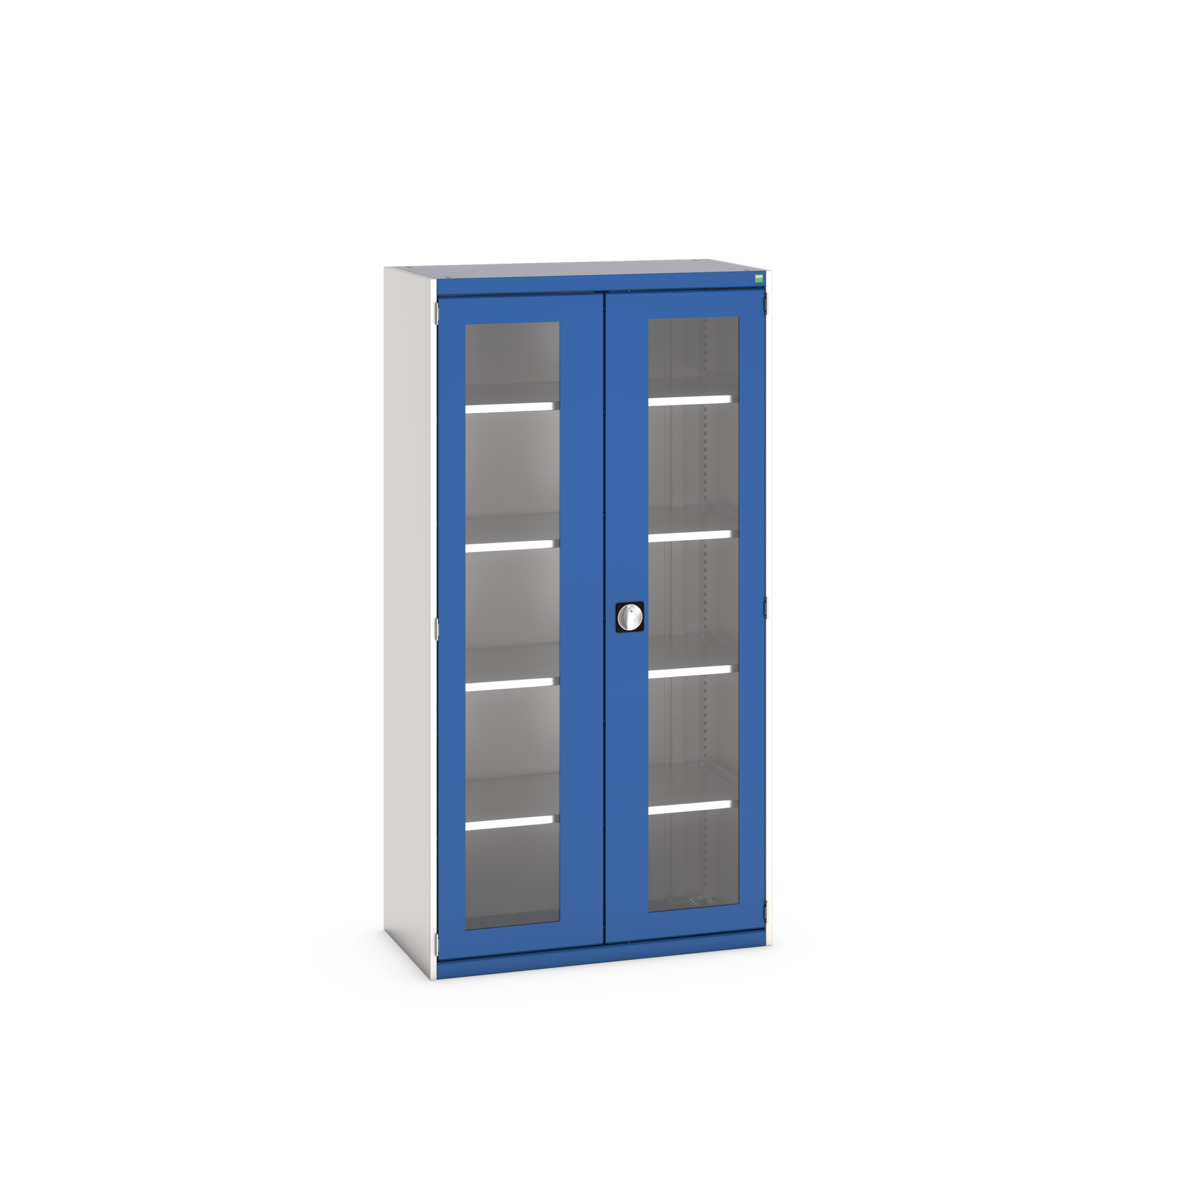 40013064.11V - cubio cupboard